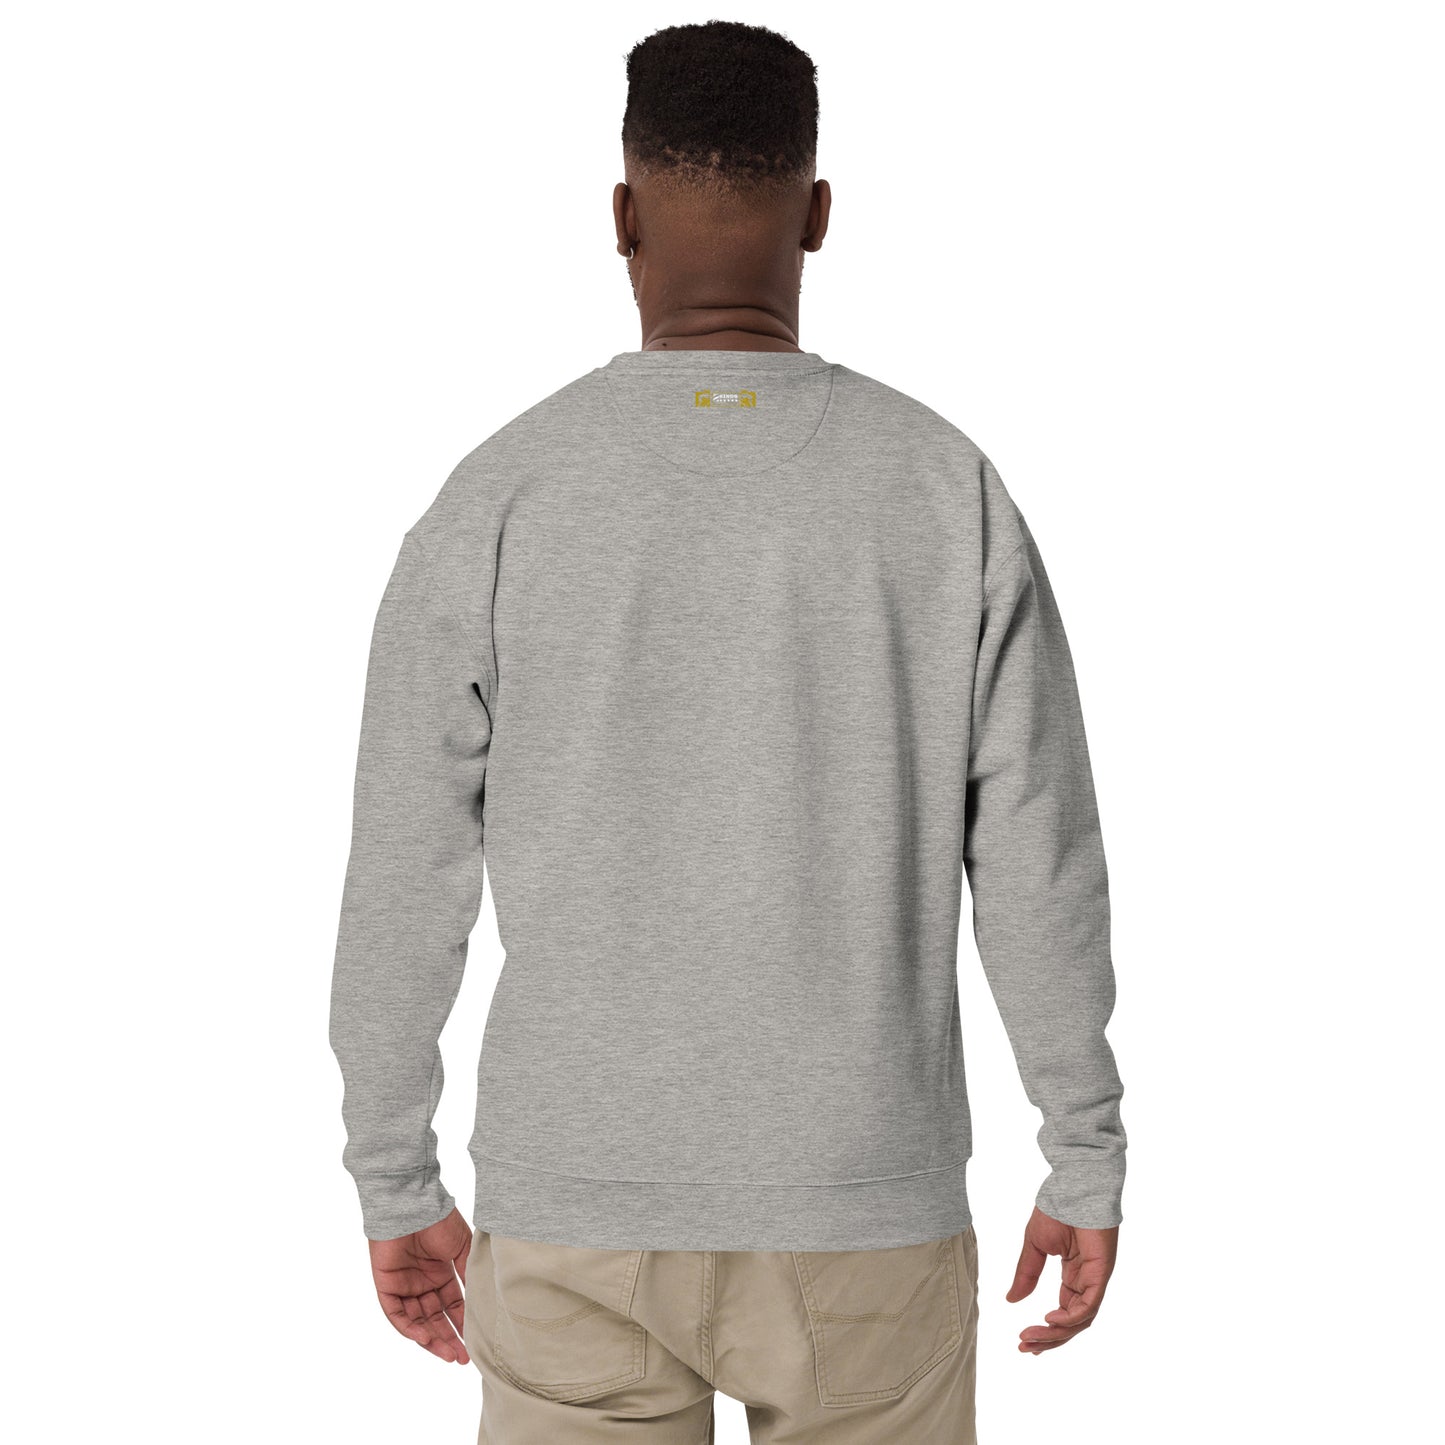 2 Kings Coffee - Branded Unisex Premium Sweatshirt